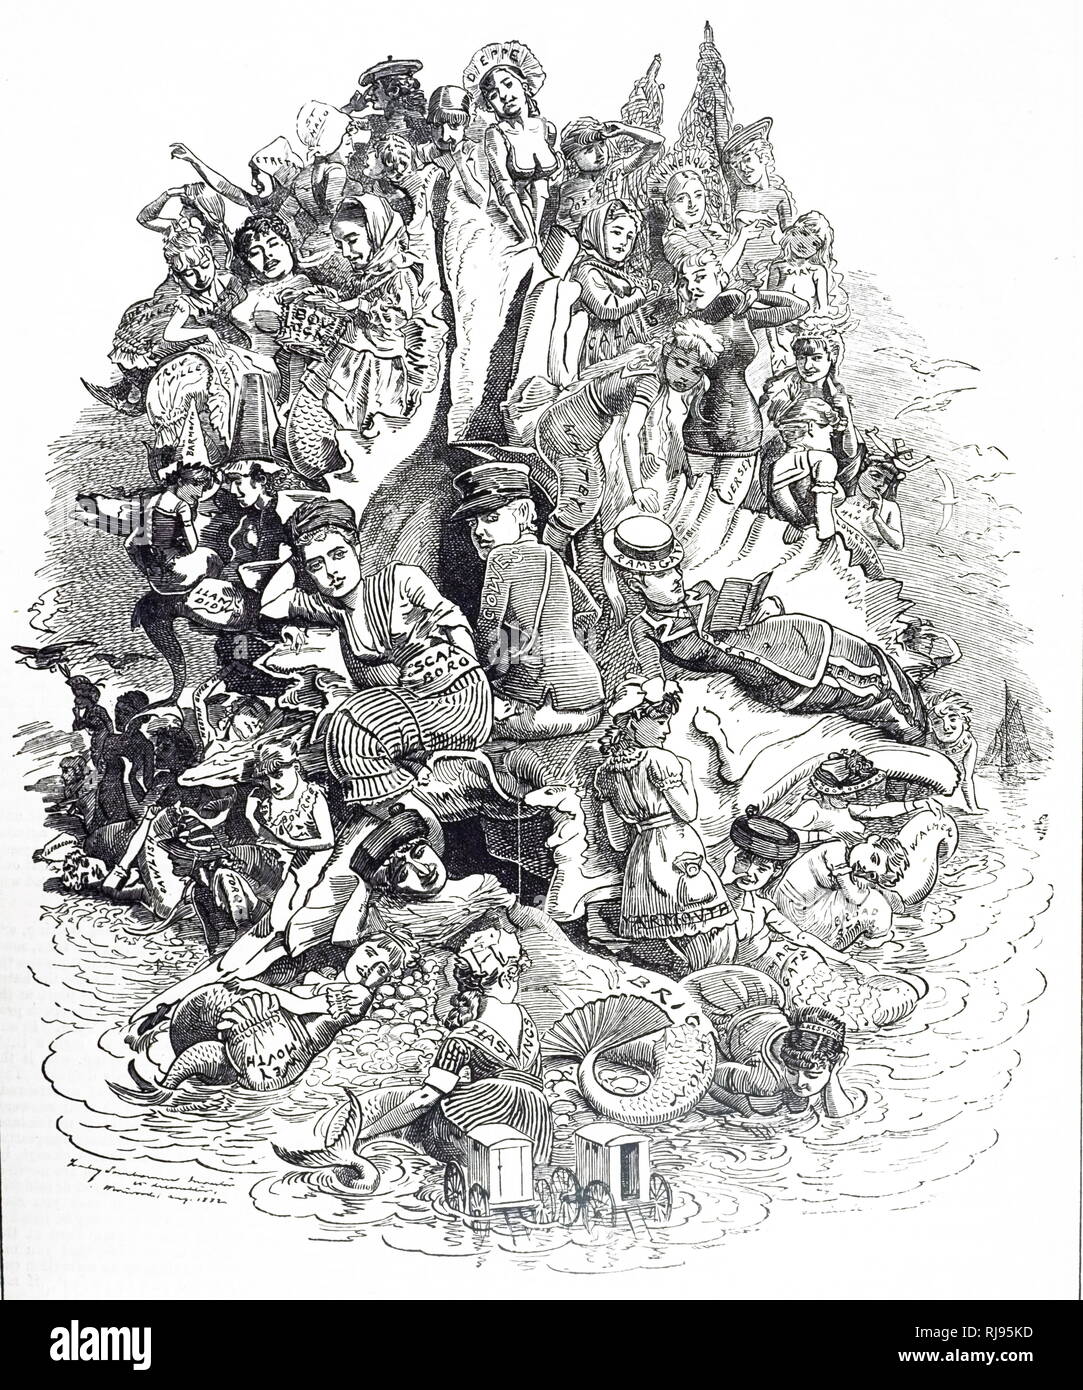 Un dessin animé commentant la stations balnéaires, chaque donne de l'importance qu'il a obtenu par le nombre de visiteurs qu'il a attiré. Linley Sambourne illustré par Edward (1844-1910), un dessinateur et illustrateur français. En date du 19e siècle Banque D'Images